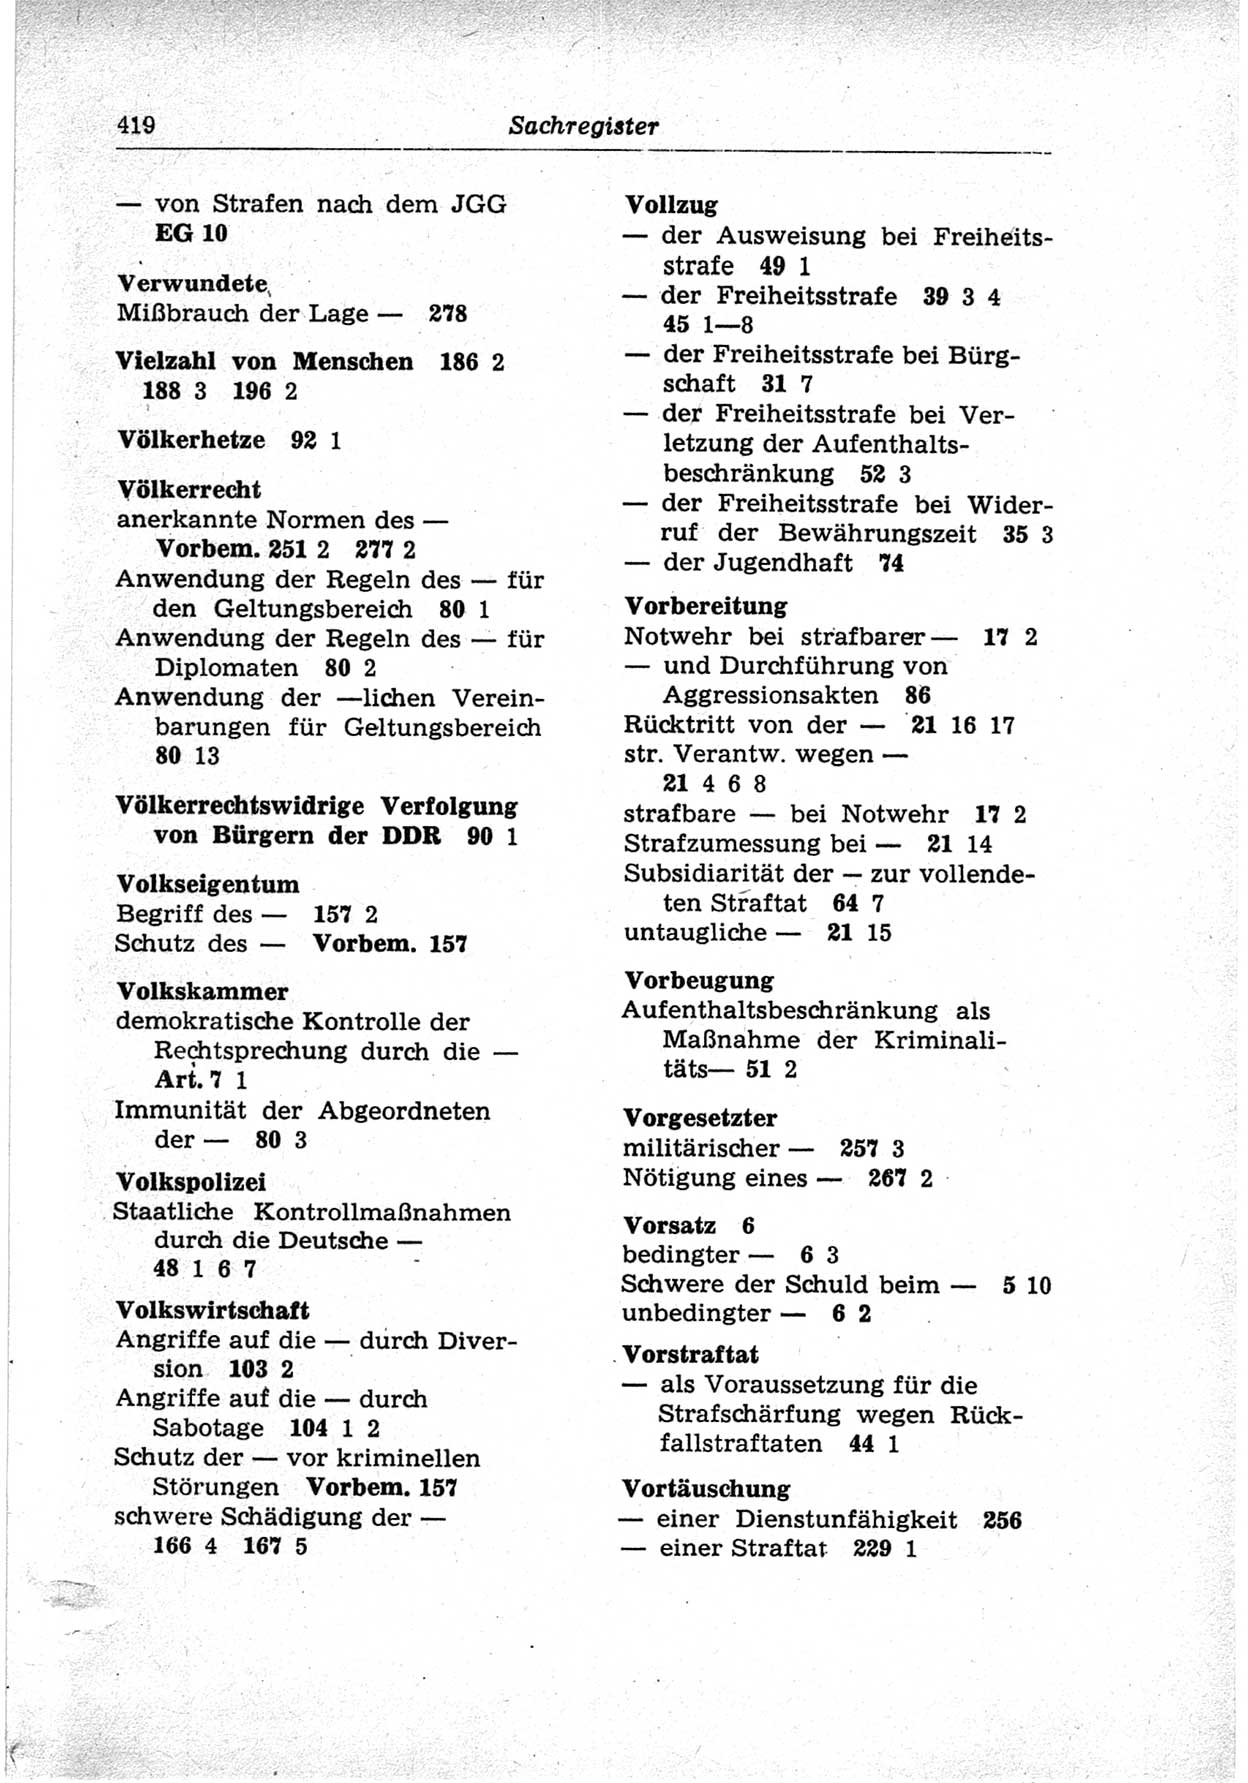 Strafrecht der Deutschen Demokratischen Republik (DDR), Lehrkommentar zum Strafgesetzbuch (StGB), Besonderer Teil 1969, Seite 419 (Strafr. DDR Lehrkomm. StGB BT 1969, S. 419)